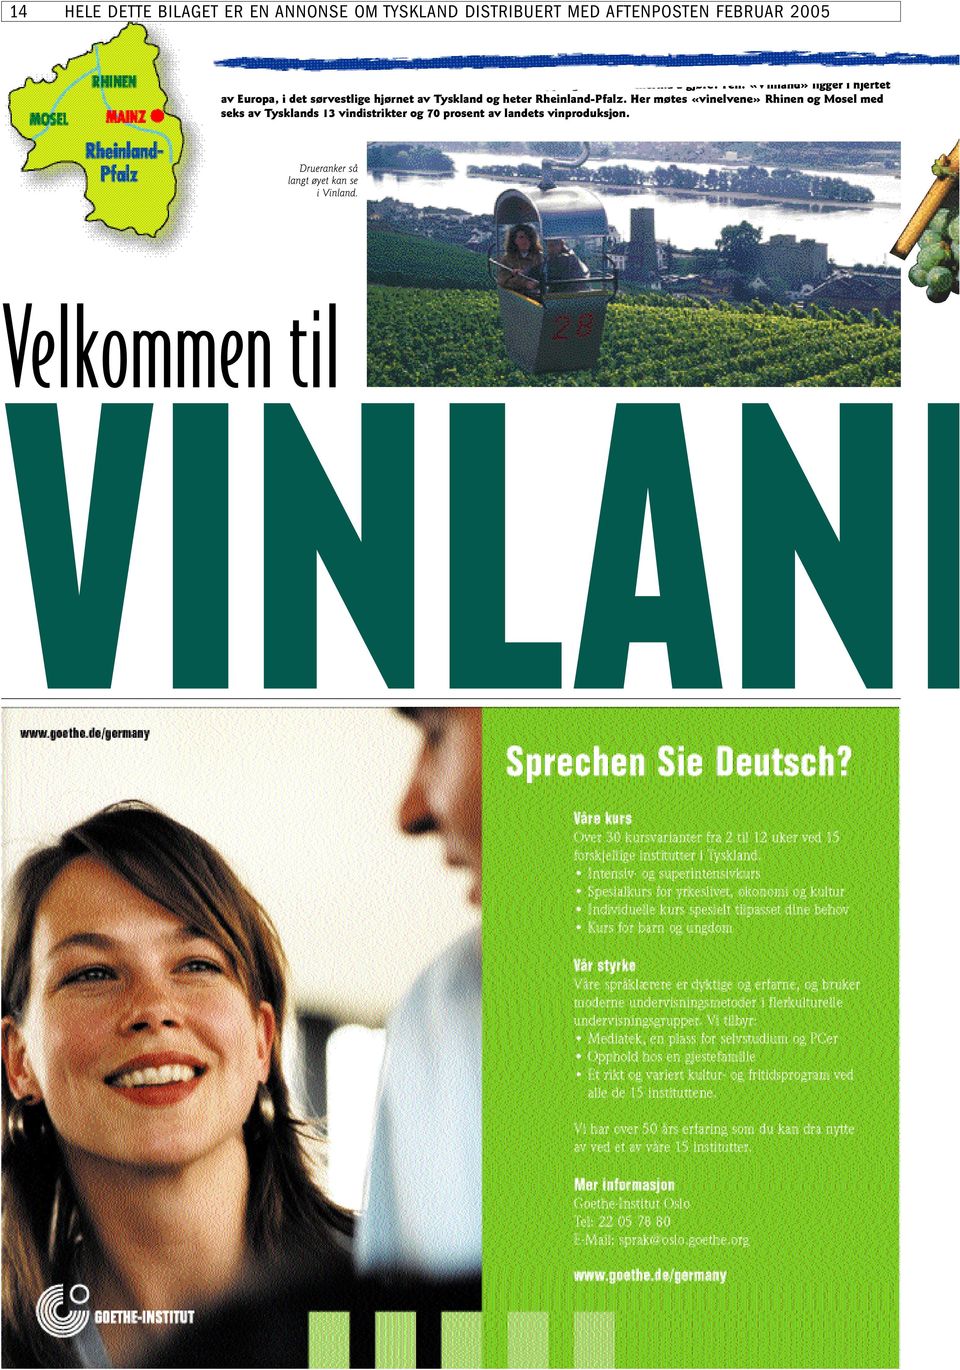 «Vinland» ligger i hjertet av Europa, i det sørvestlige hjørnet av Tyskland og heter Rheinland-Pfalz.